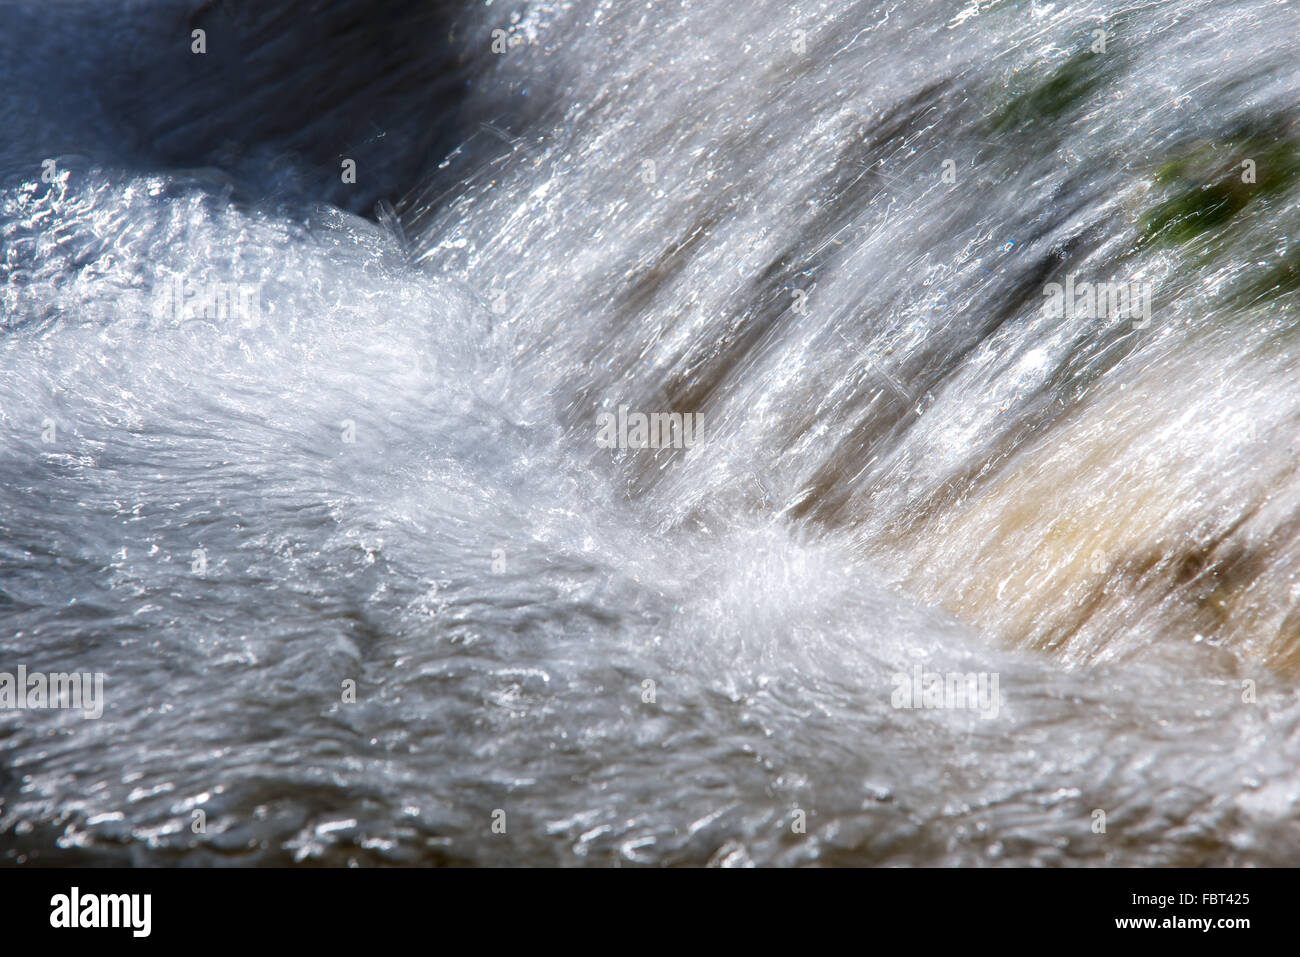 Close-up of flowing, splashing water Stock Photo